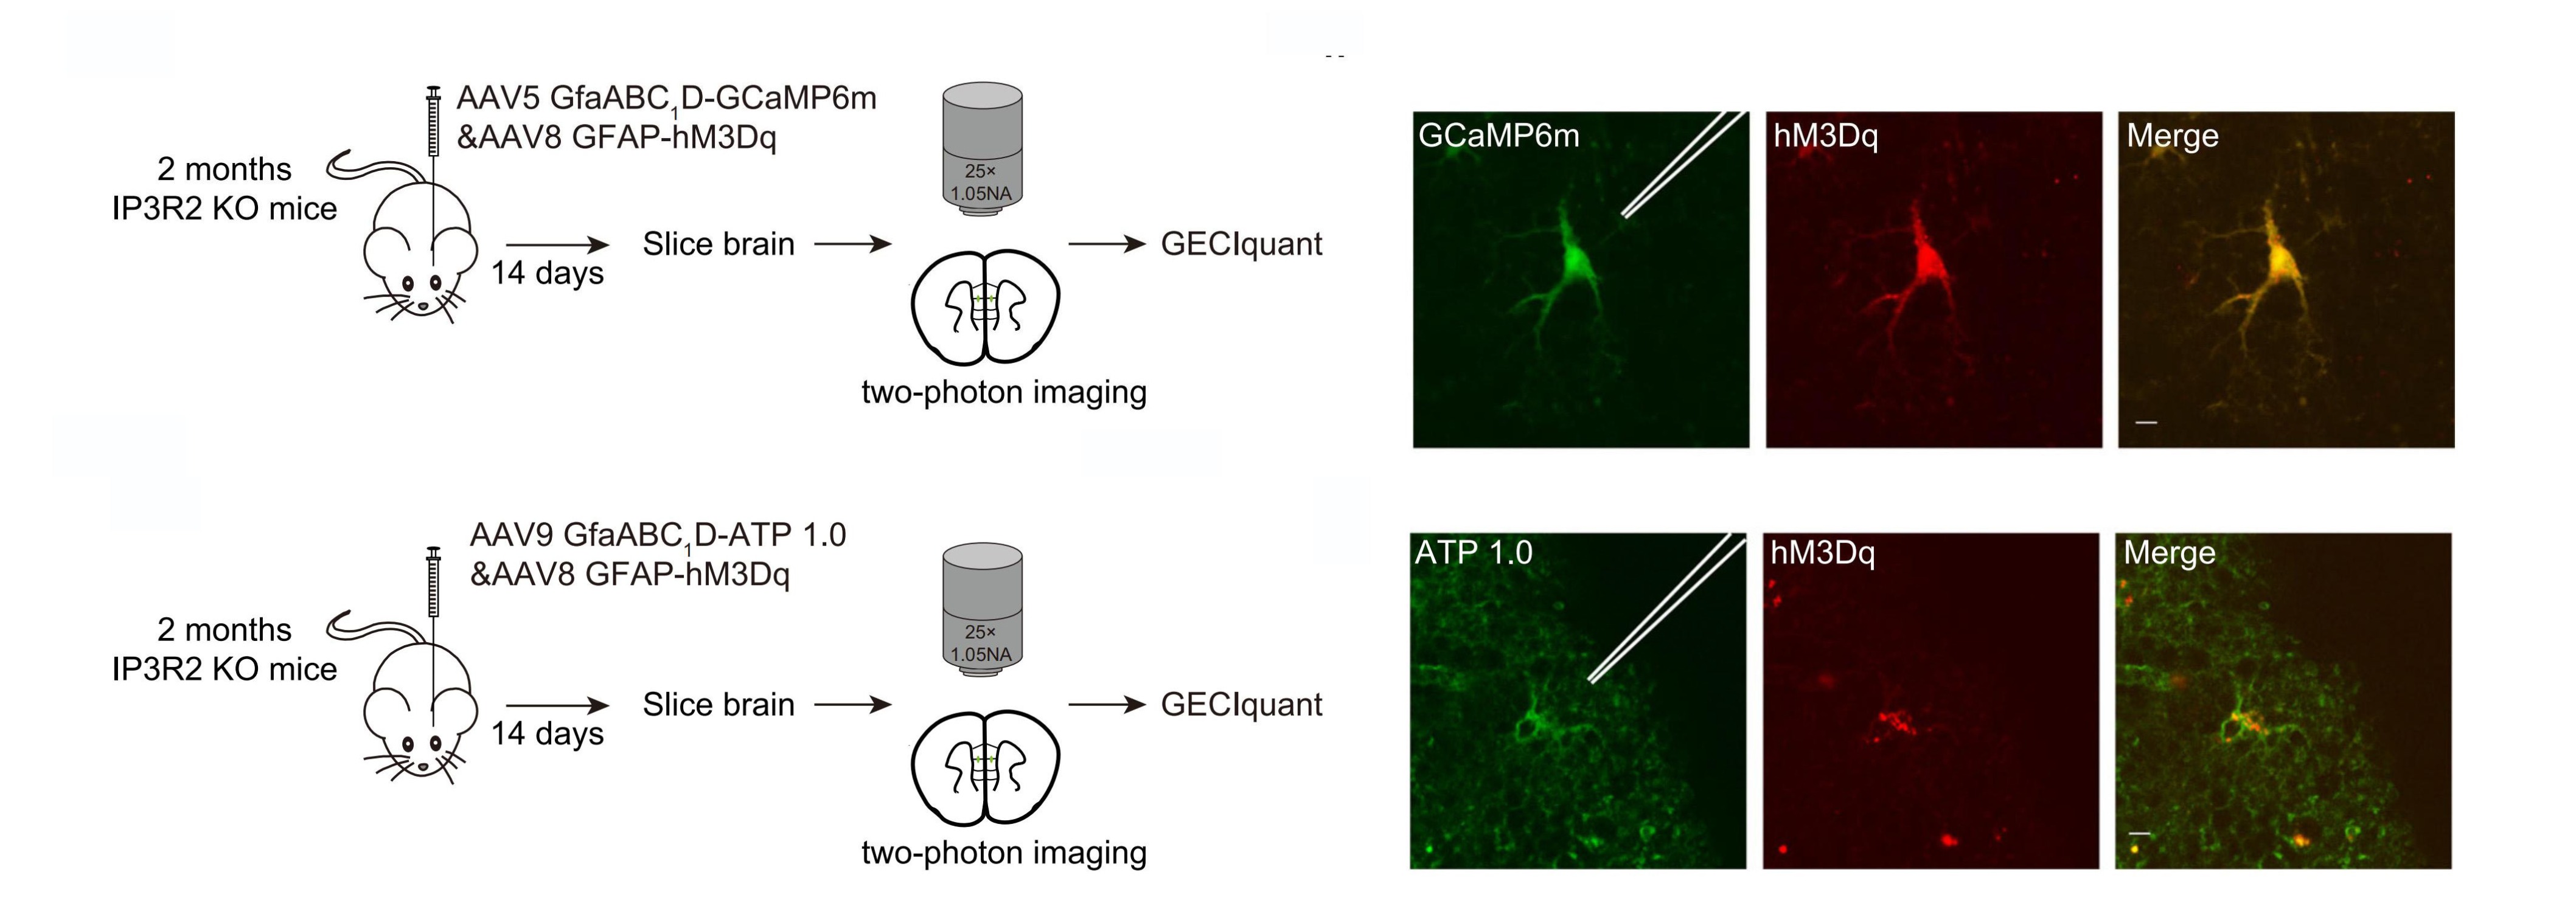 维真生物-IP3R2 KO小鼠星形胶质细胞中ATP水平降低